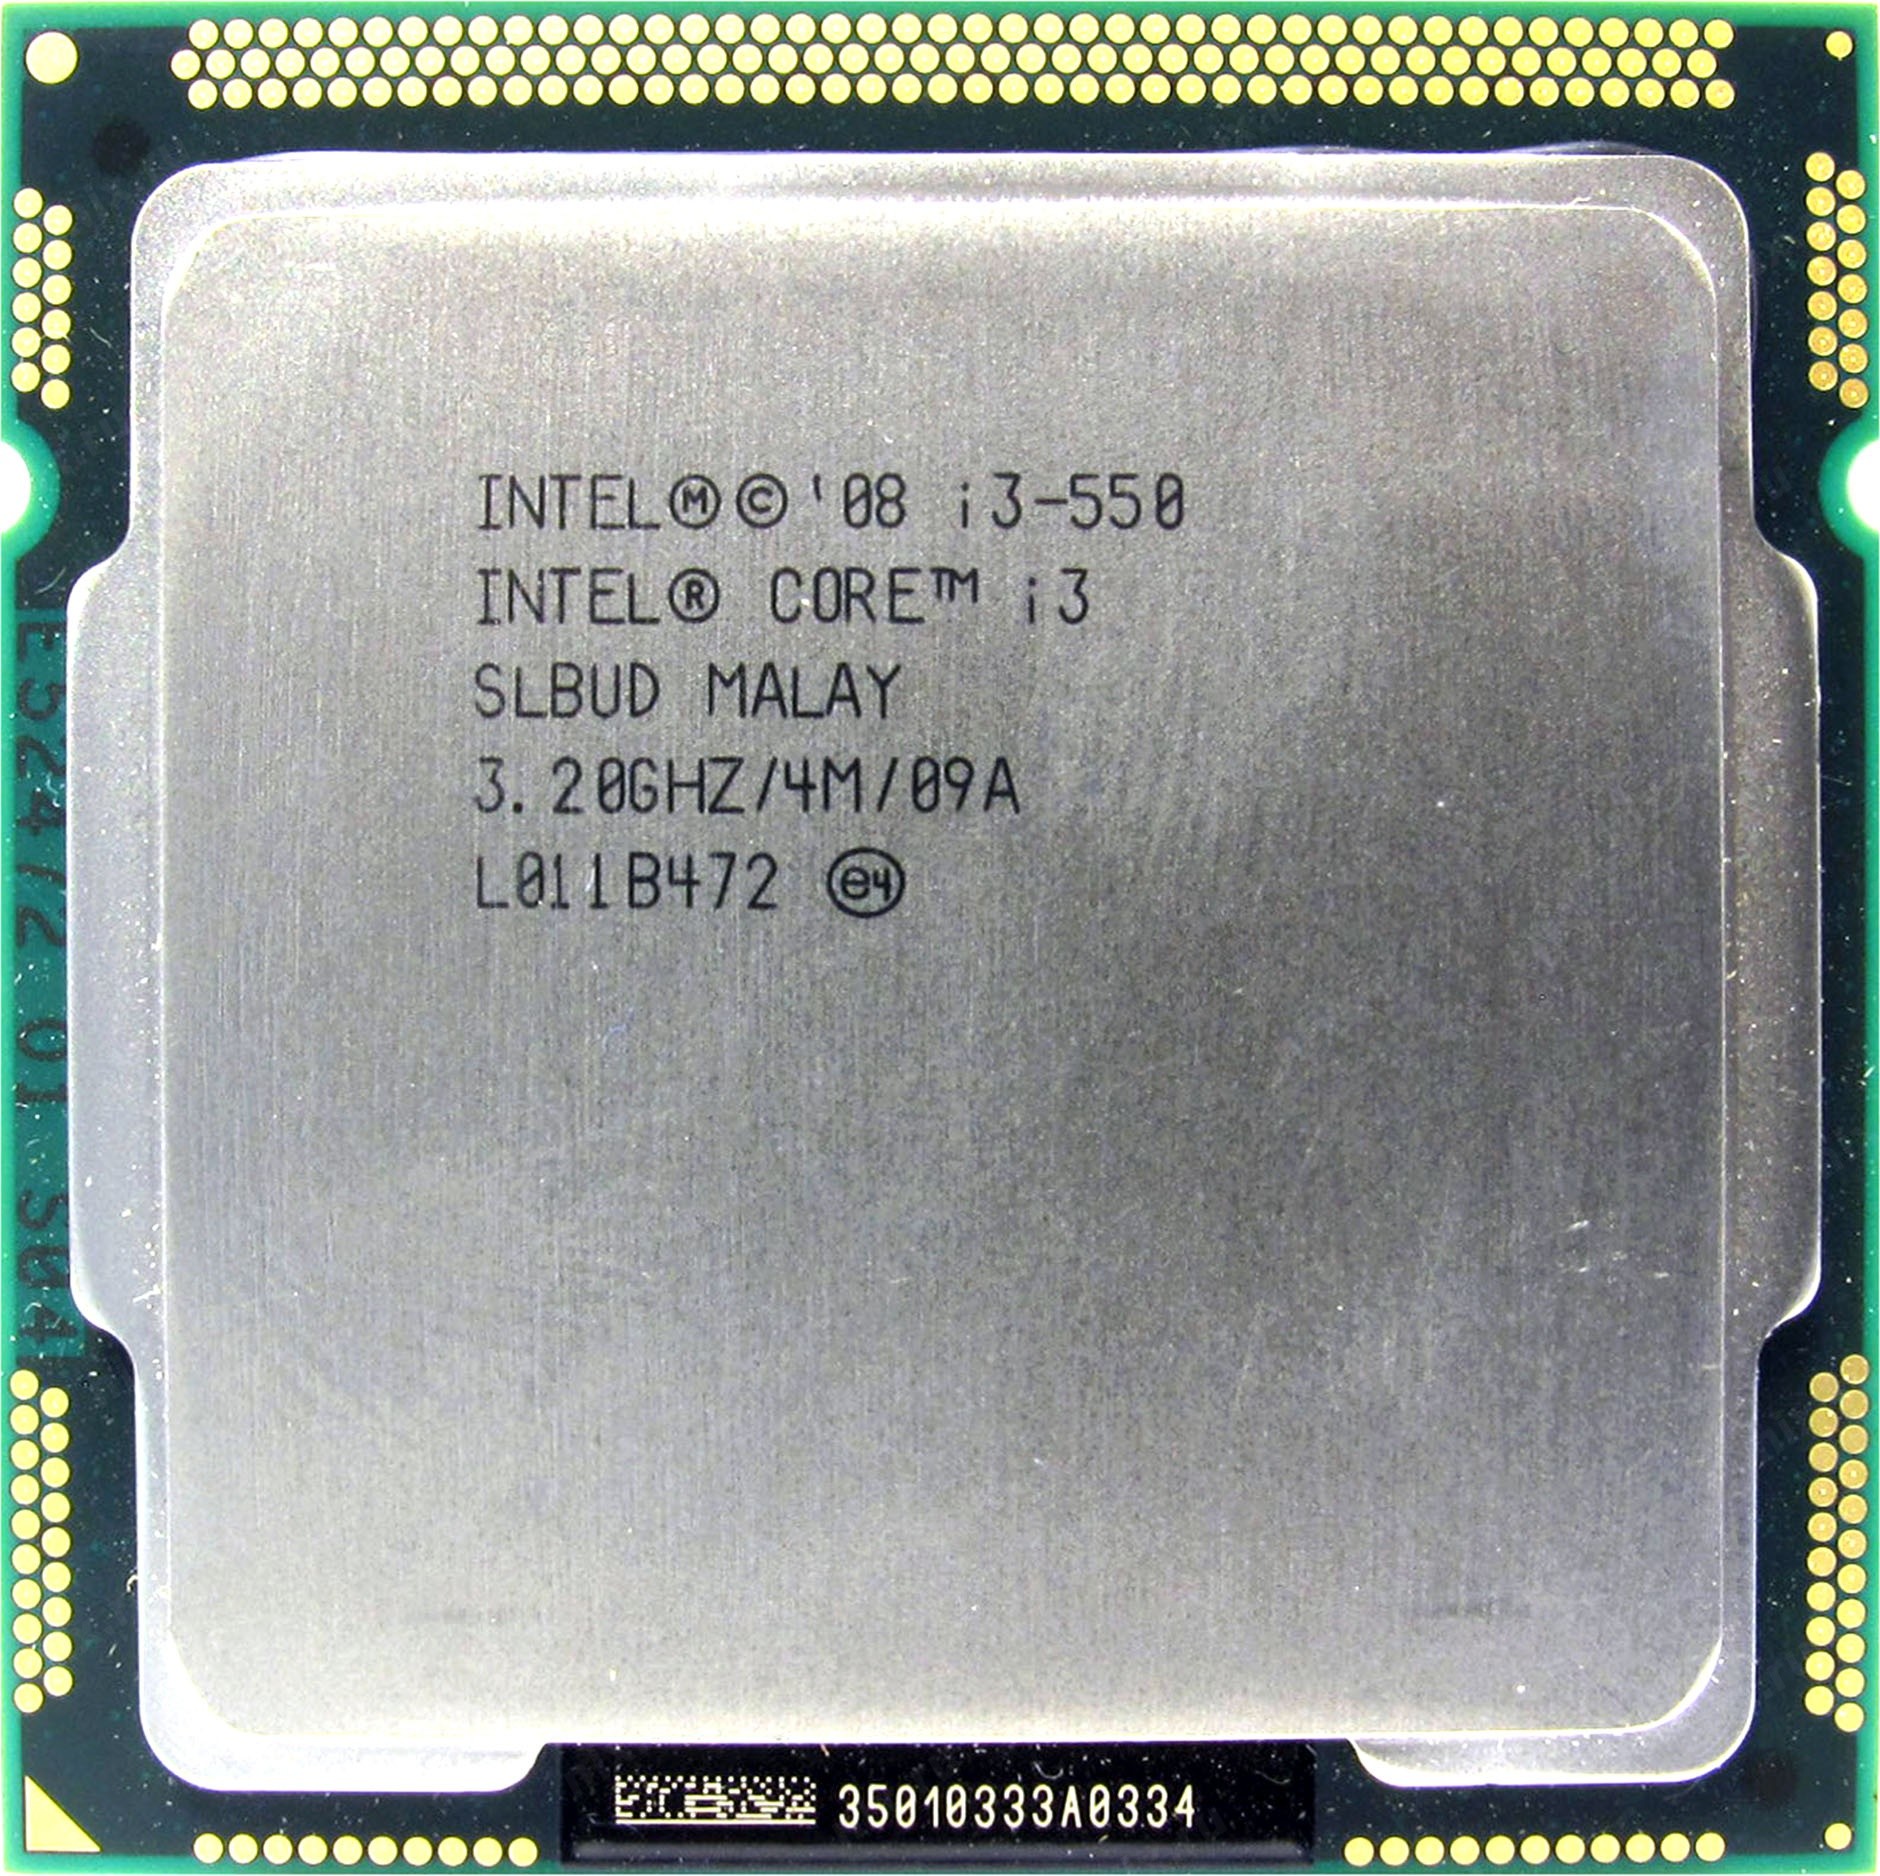 Intel core i3 какой сокет. Intel Core i3. Intel Core 3. Процессор Интел кор i3 сокет. Intel Core i3 550.